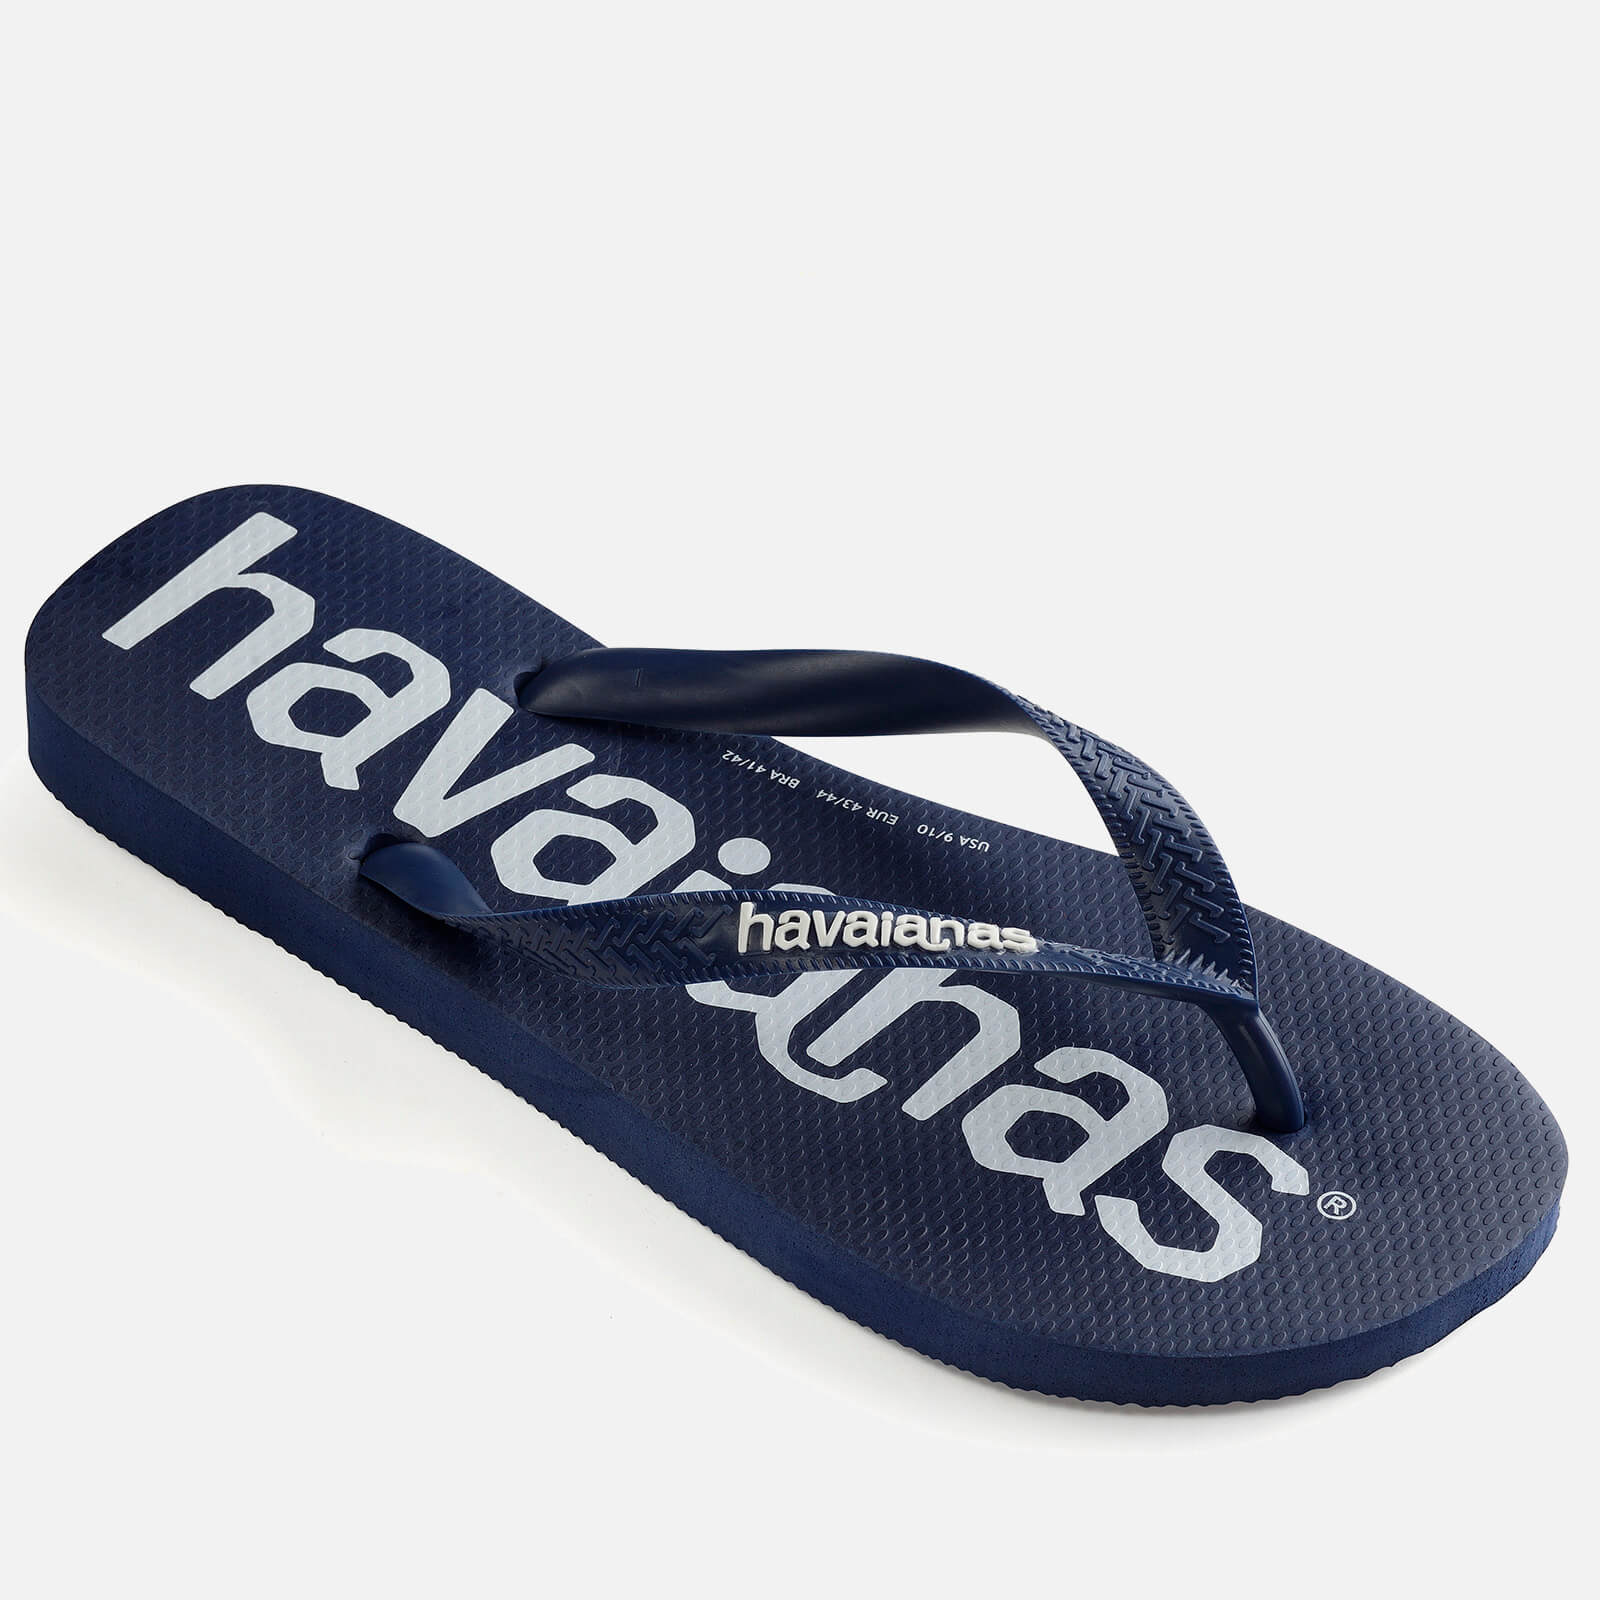 Havaianas Men's Top Logomania Flip Flops - Navy Blue - EU 39-40/UK 6-7